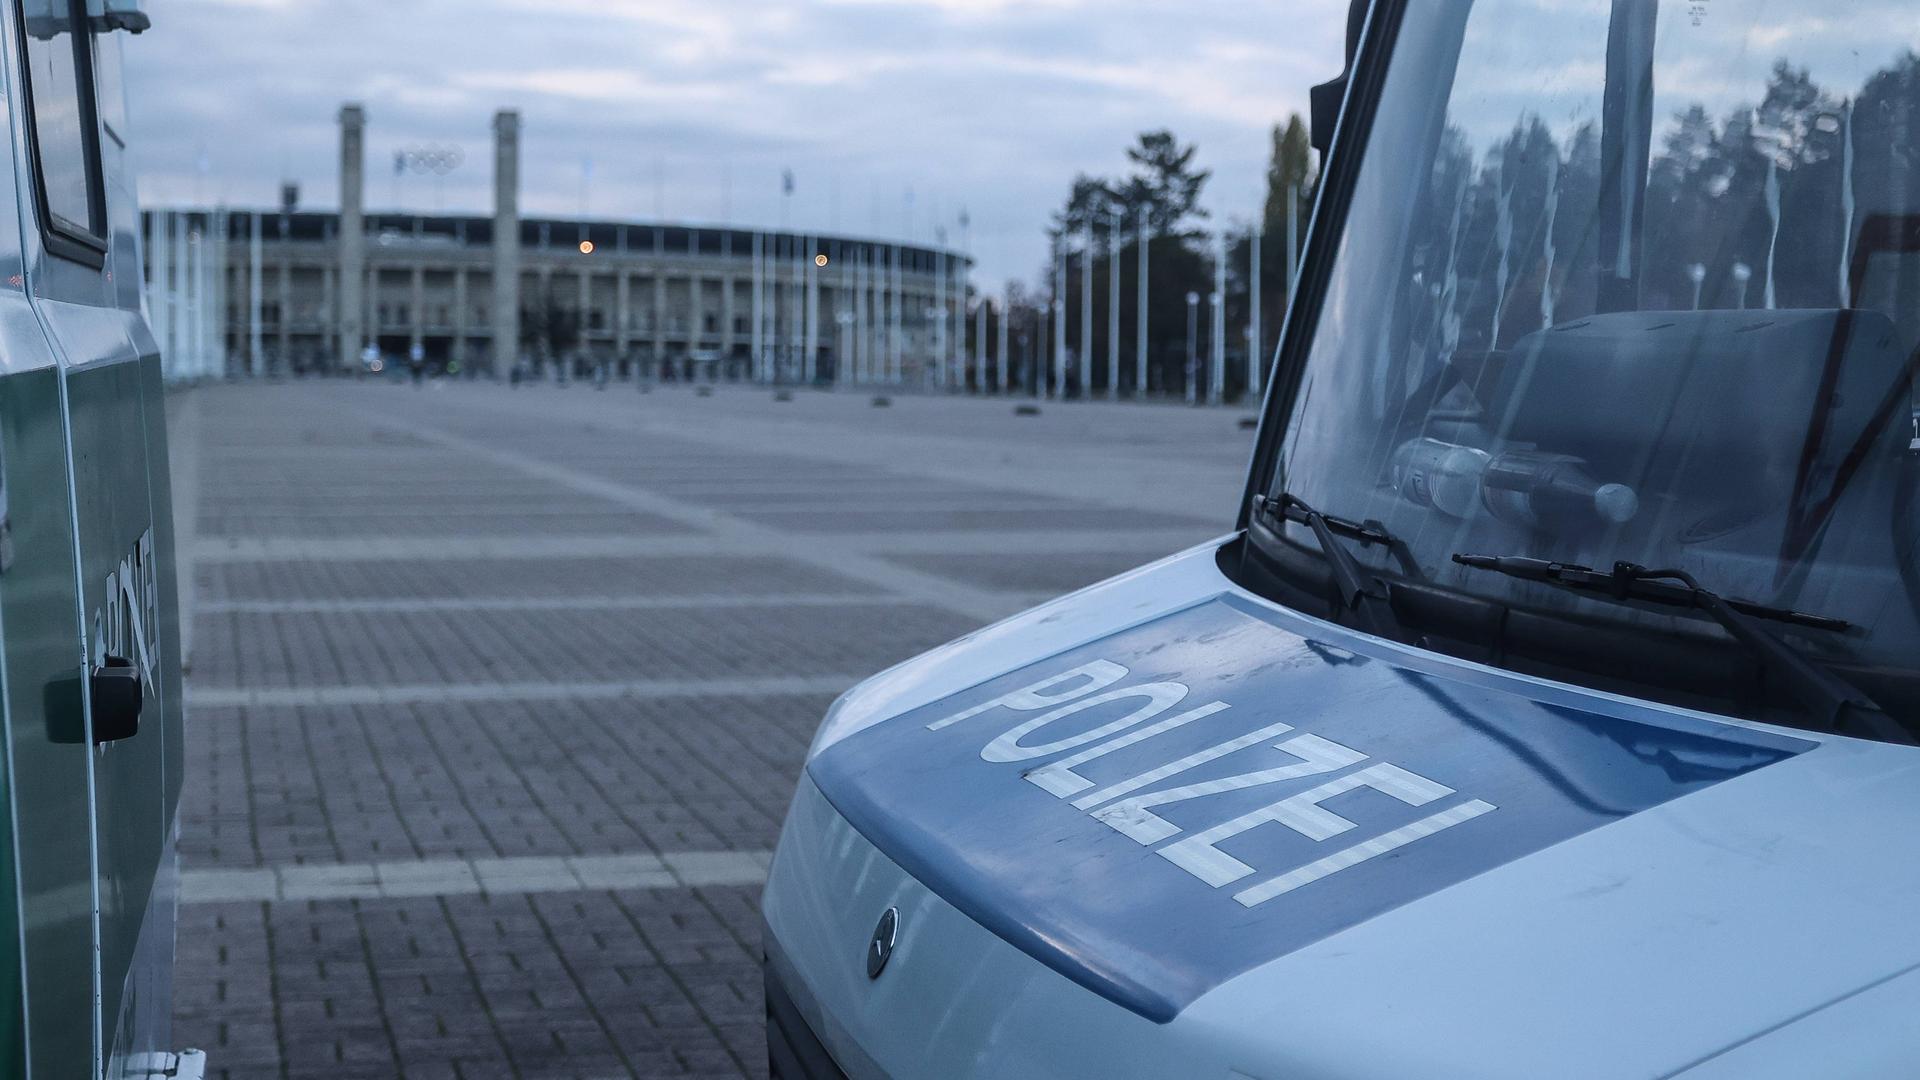 Zu sehen ist der vordere Teil eines Polizeiwagens, im Hintergrund ist das Olympiastadion in Berlin zu sehen. 